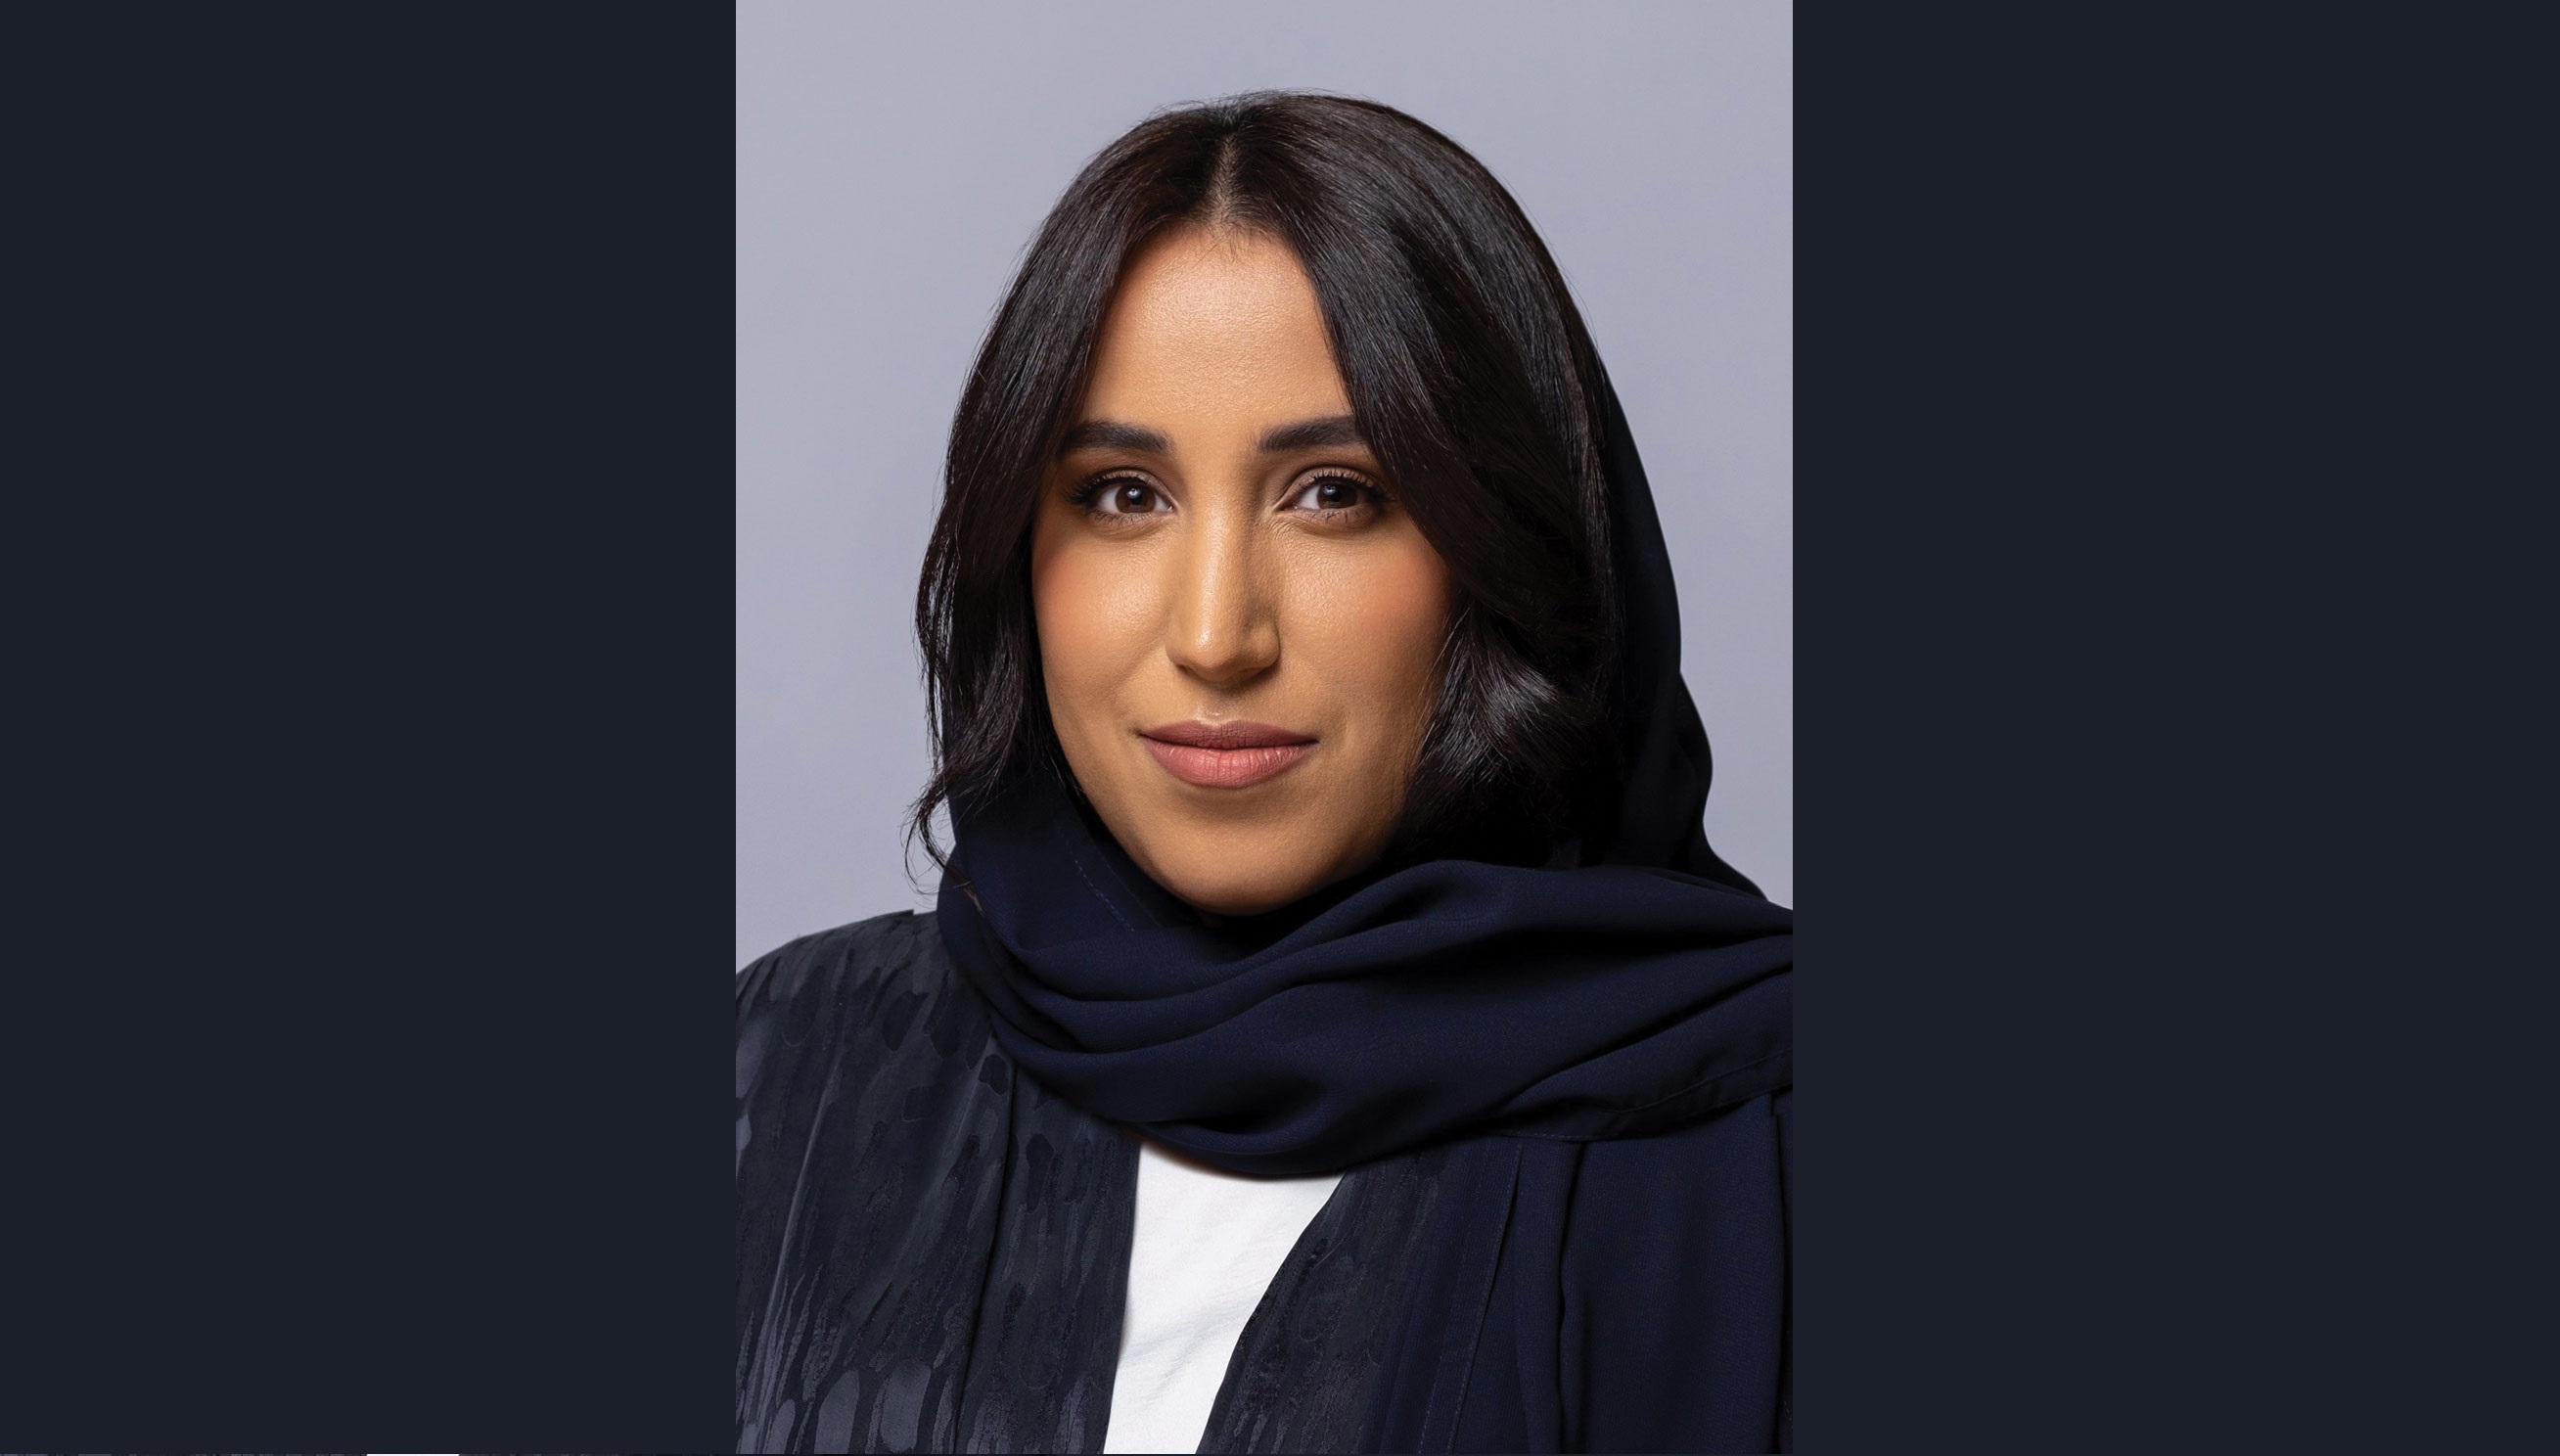 Top 30 Leaders 2021: #5 Jomana Al-Rashed